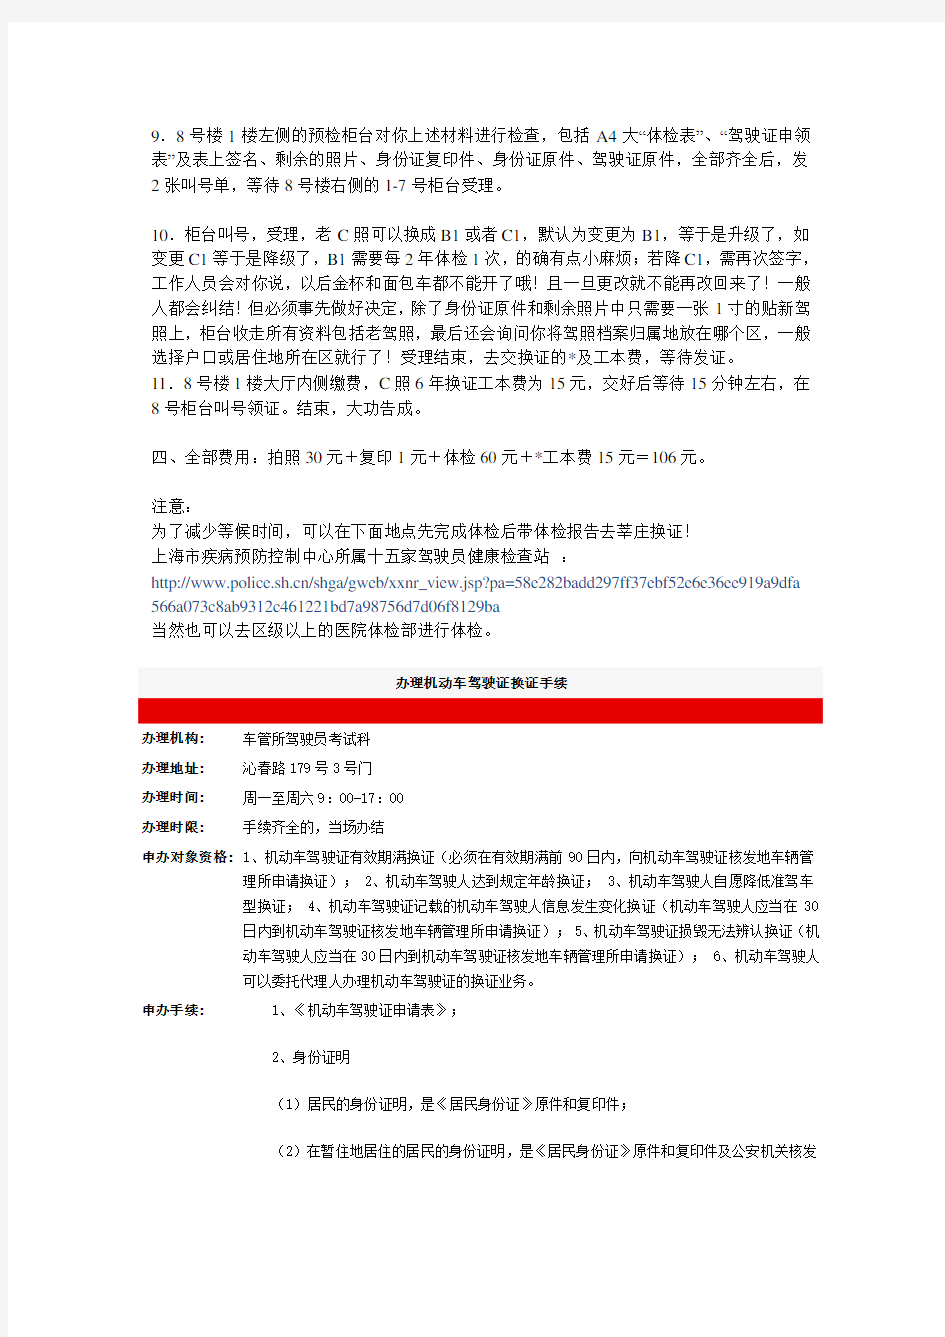 上海驾驶证换证步骤